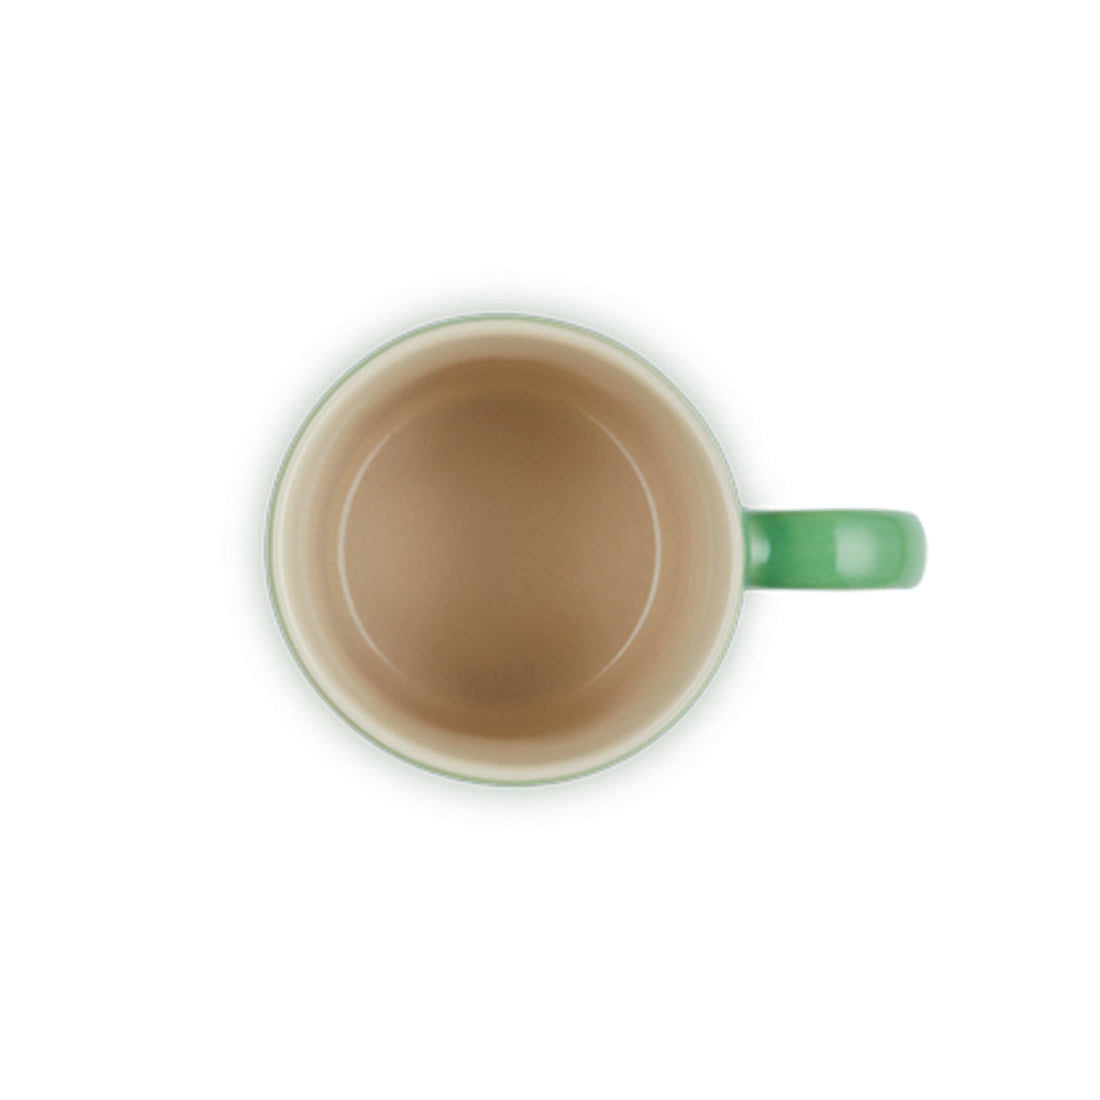 Le Creuset, Le Creuset Stoneware Espresso Mug - Bamboo Green, Redber Coffee